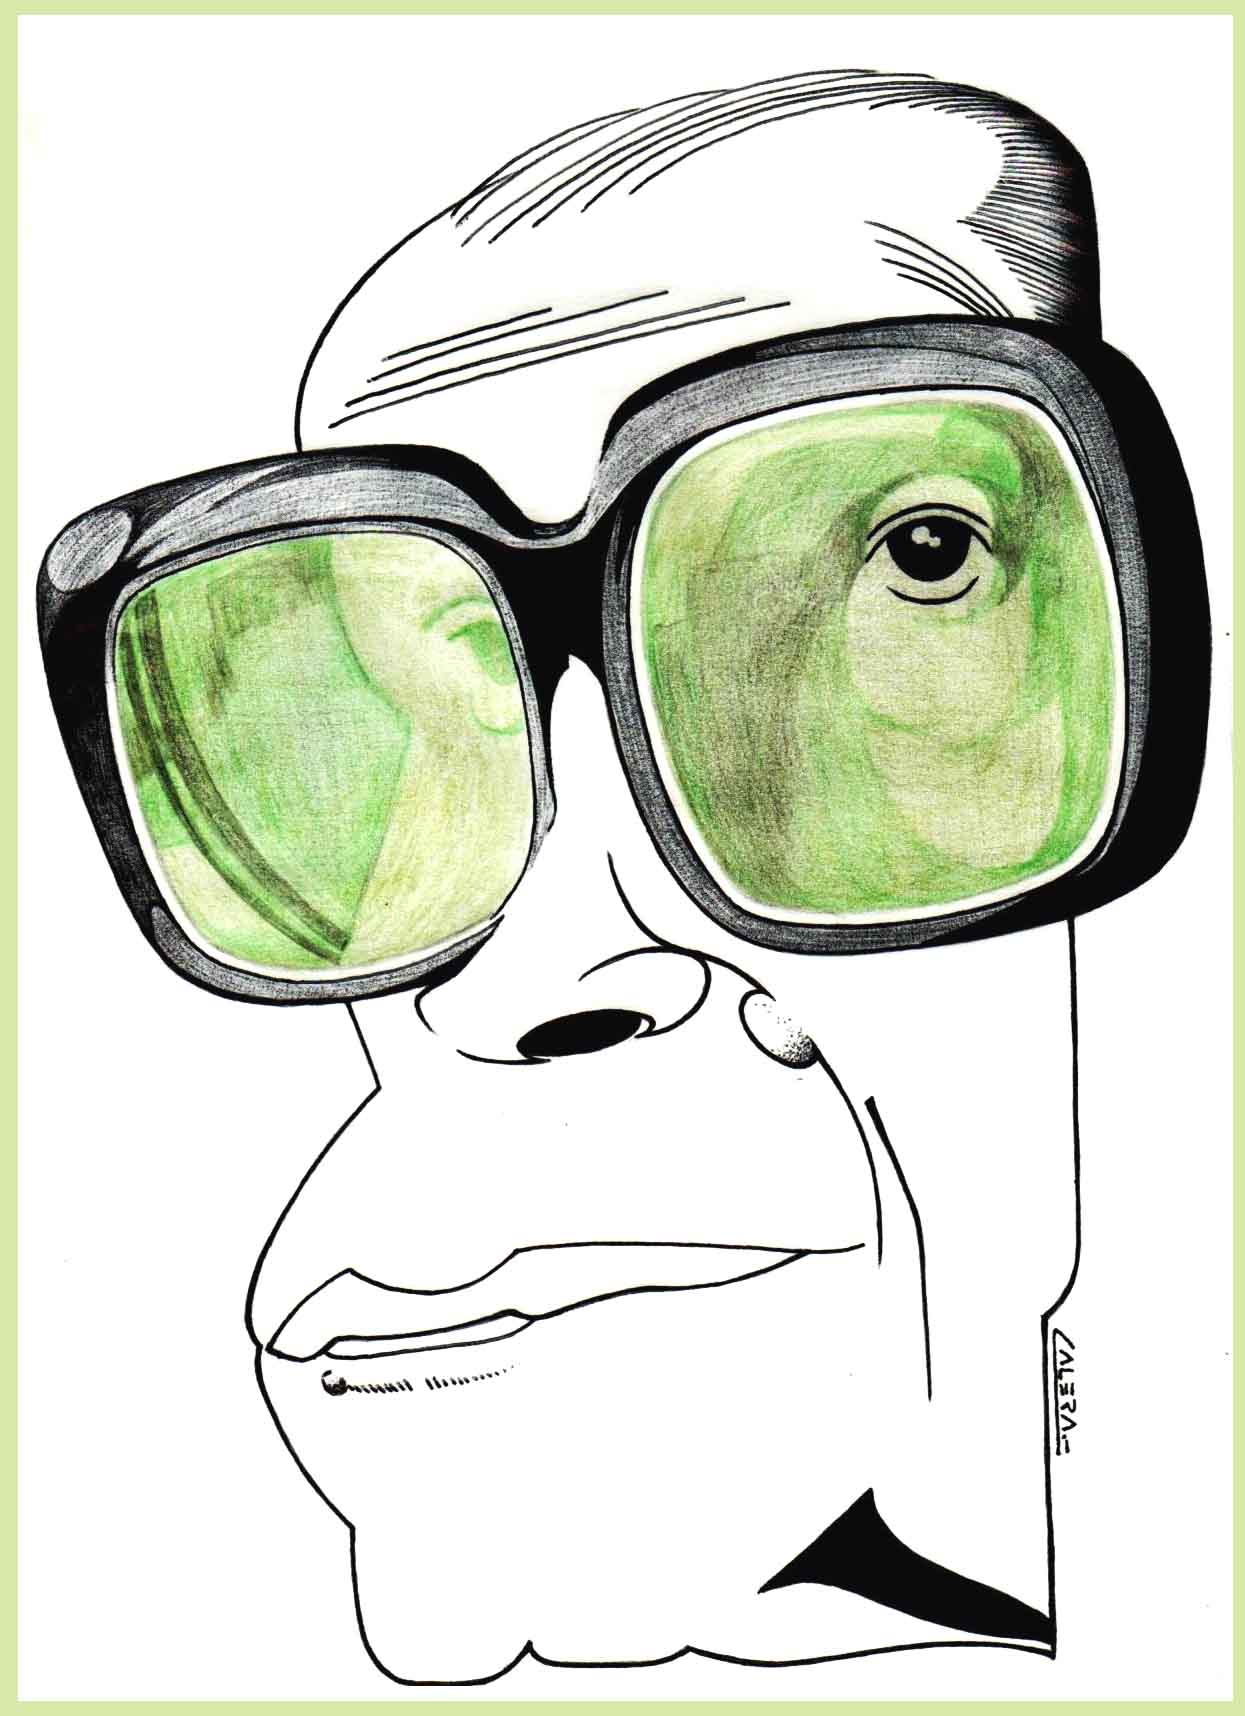 Naguib Mahfouz .. Caricature by Cesar Andres - Uruguay